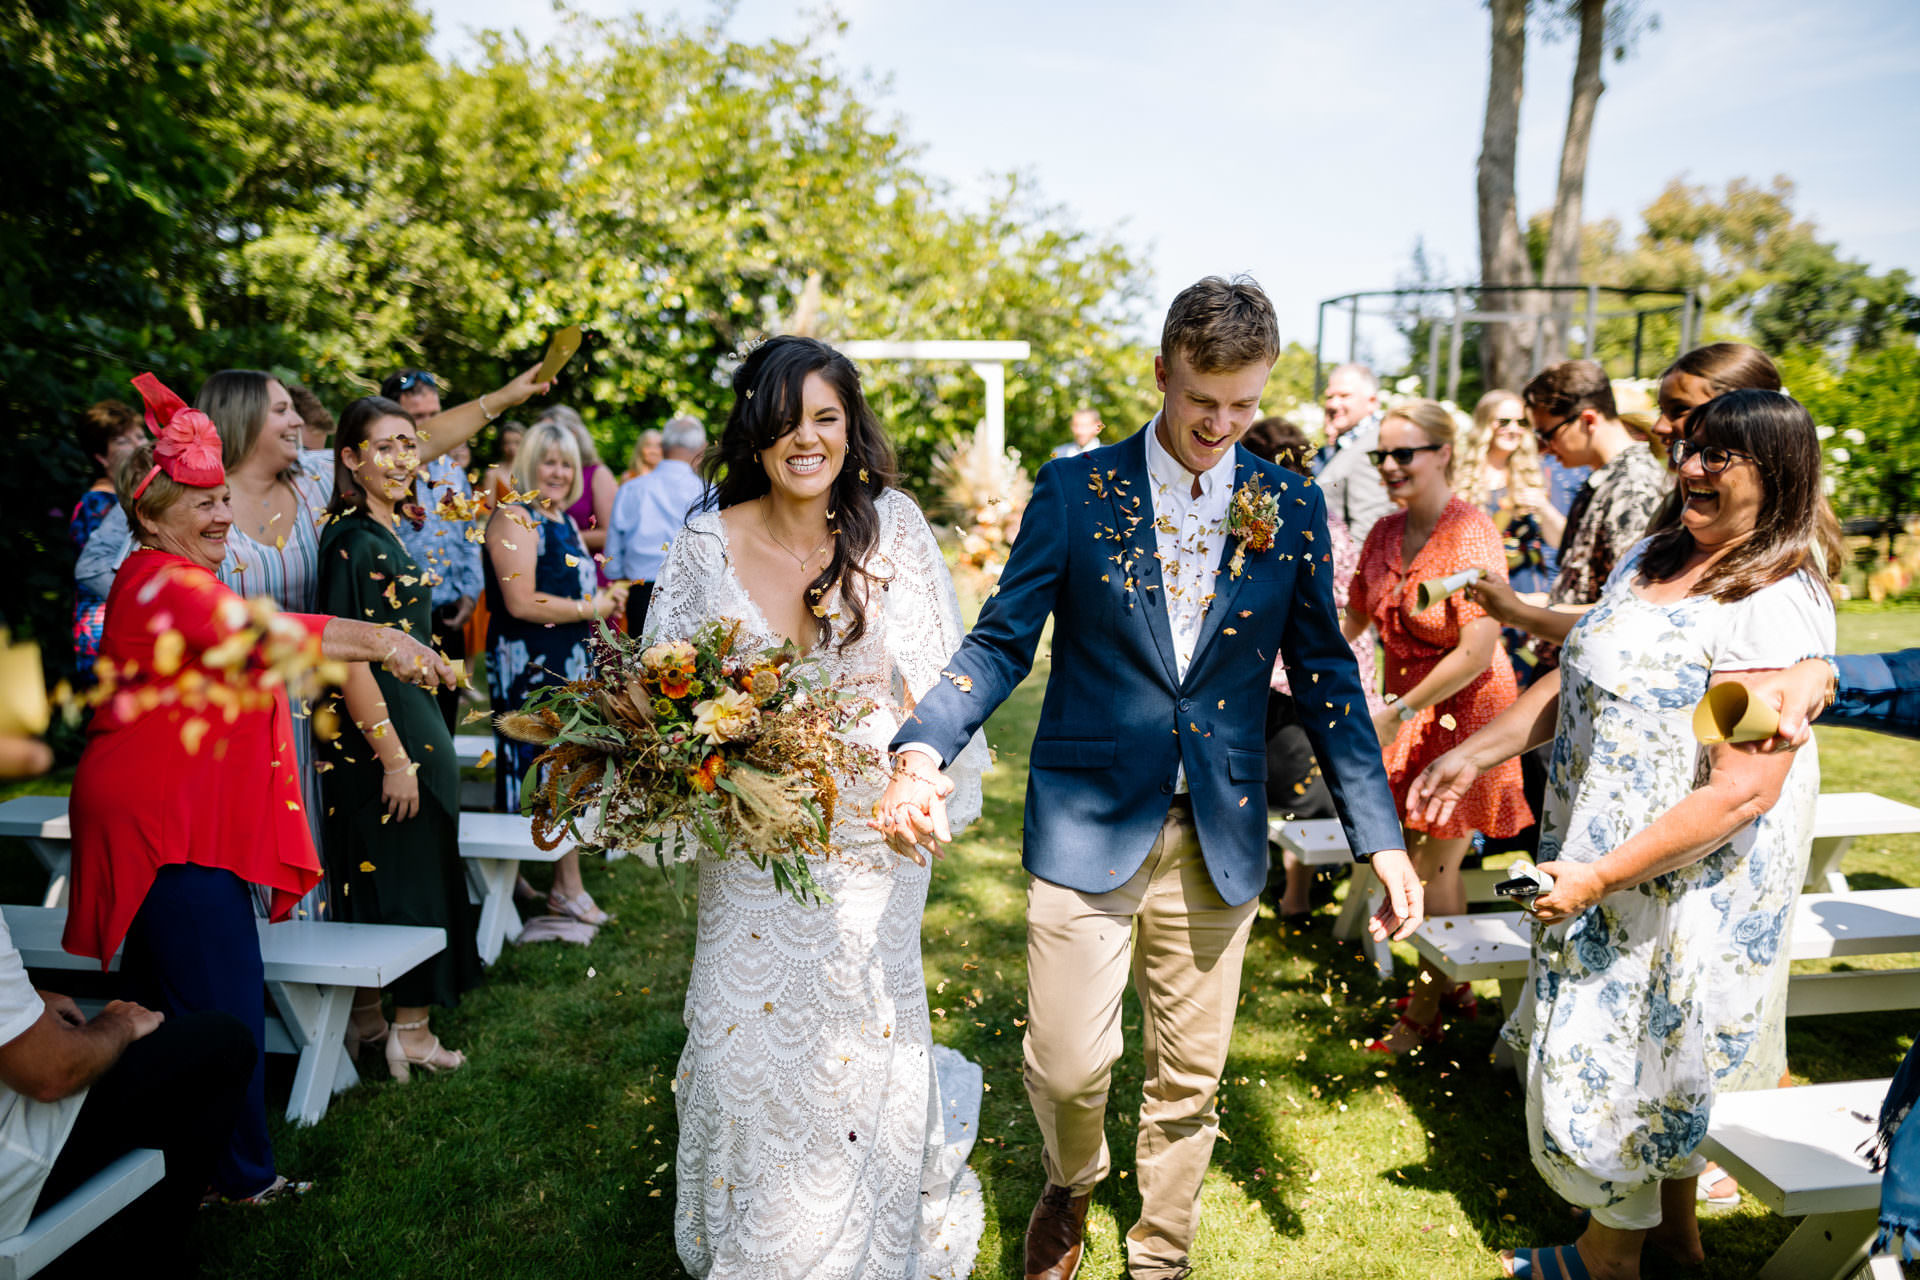 Bride and groom confetti isle photograph